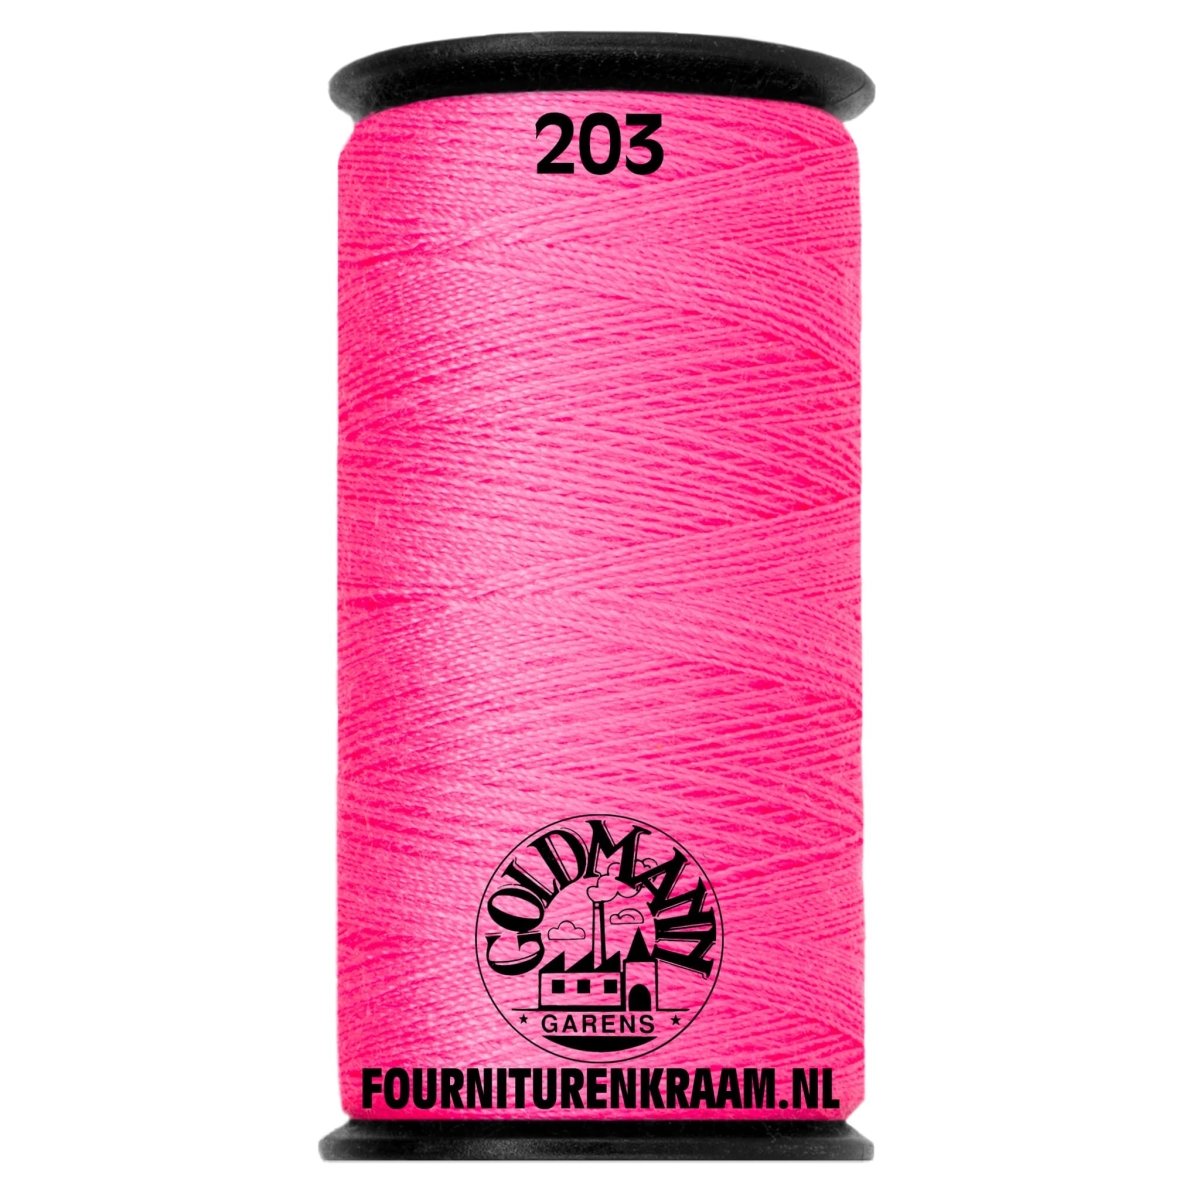 Goldmann garen 200m - 203 fluor roze Garen GOLDMANN-GAREN-200M-203 - Fourniturenkraam.nl